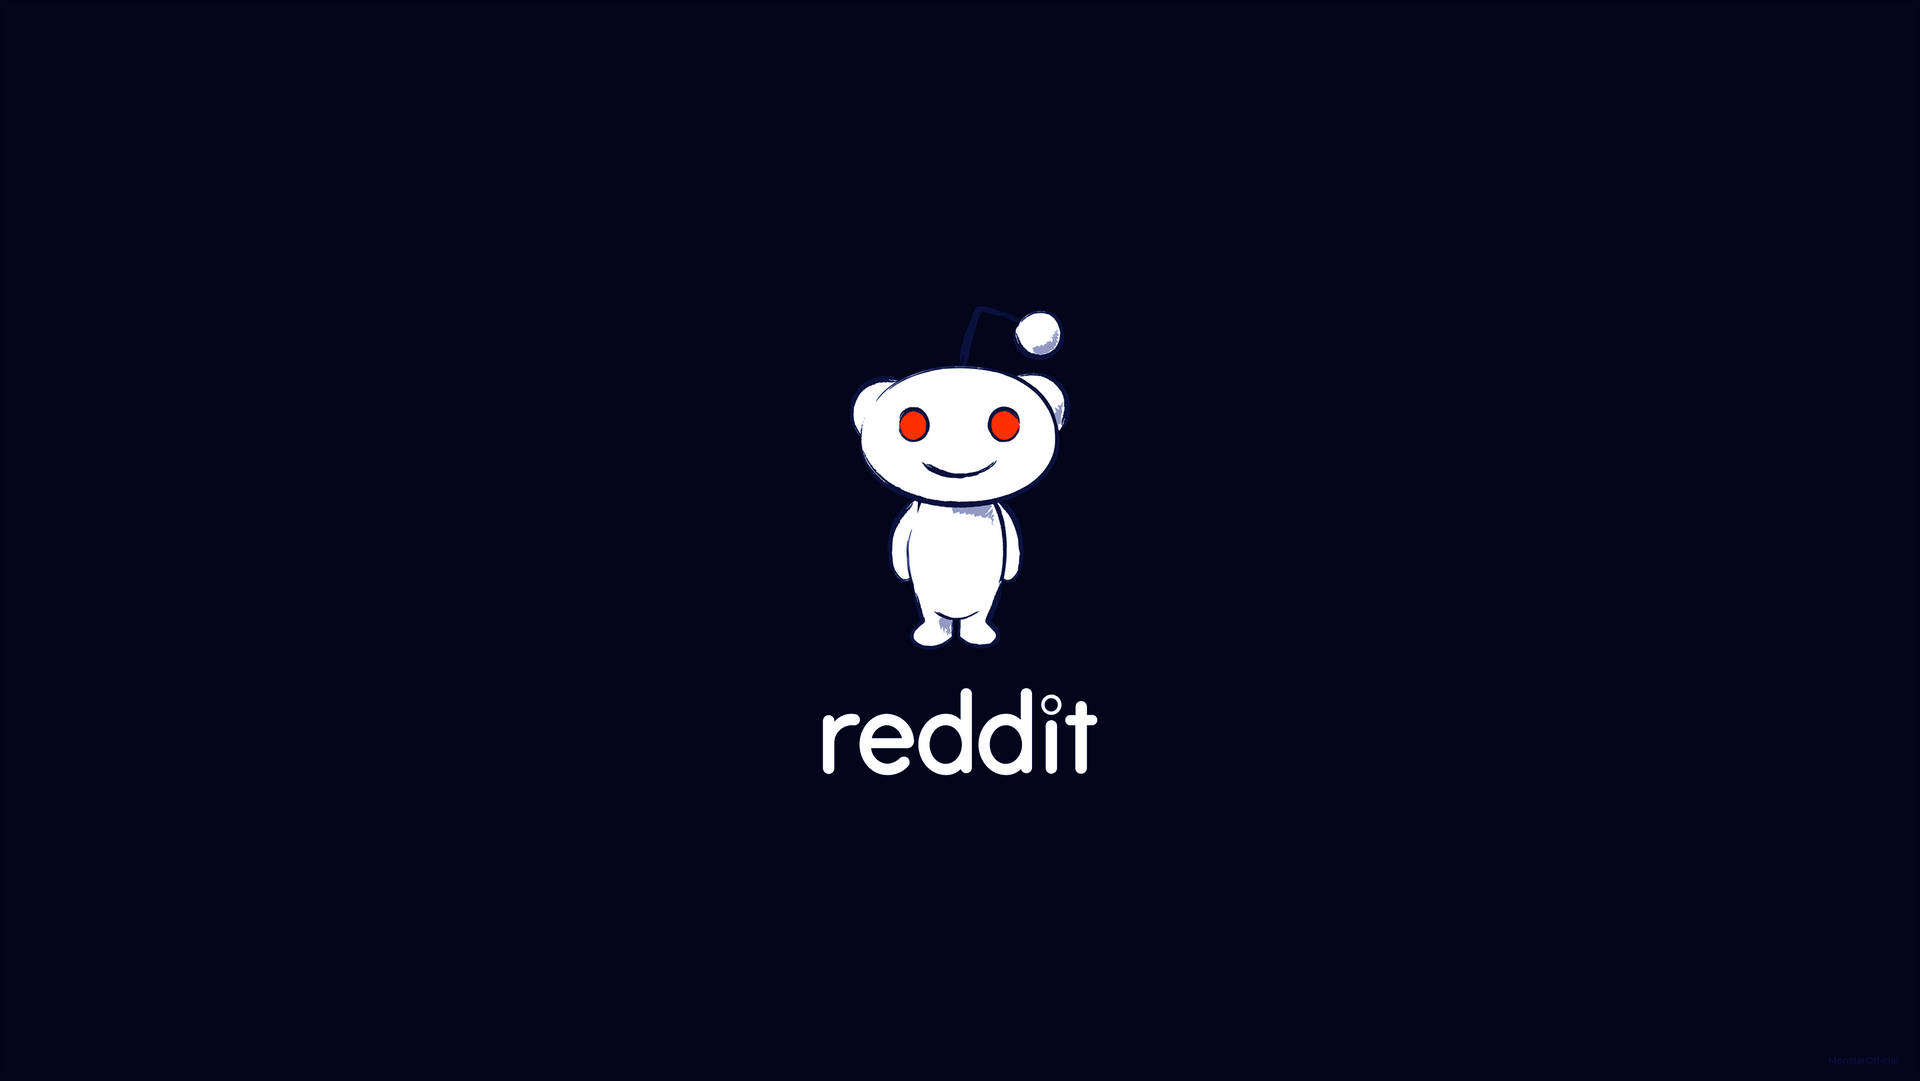 Black Minimal Reddit Logo And Title Background